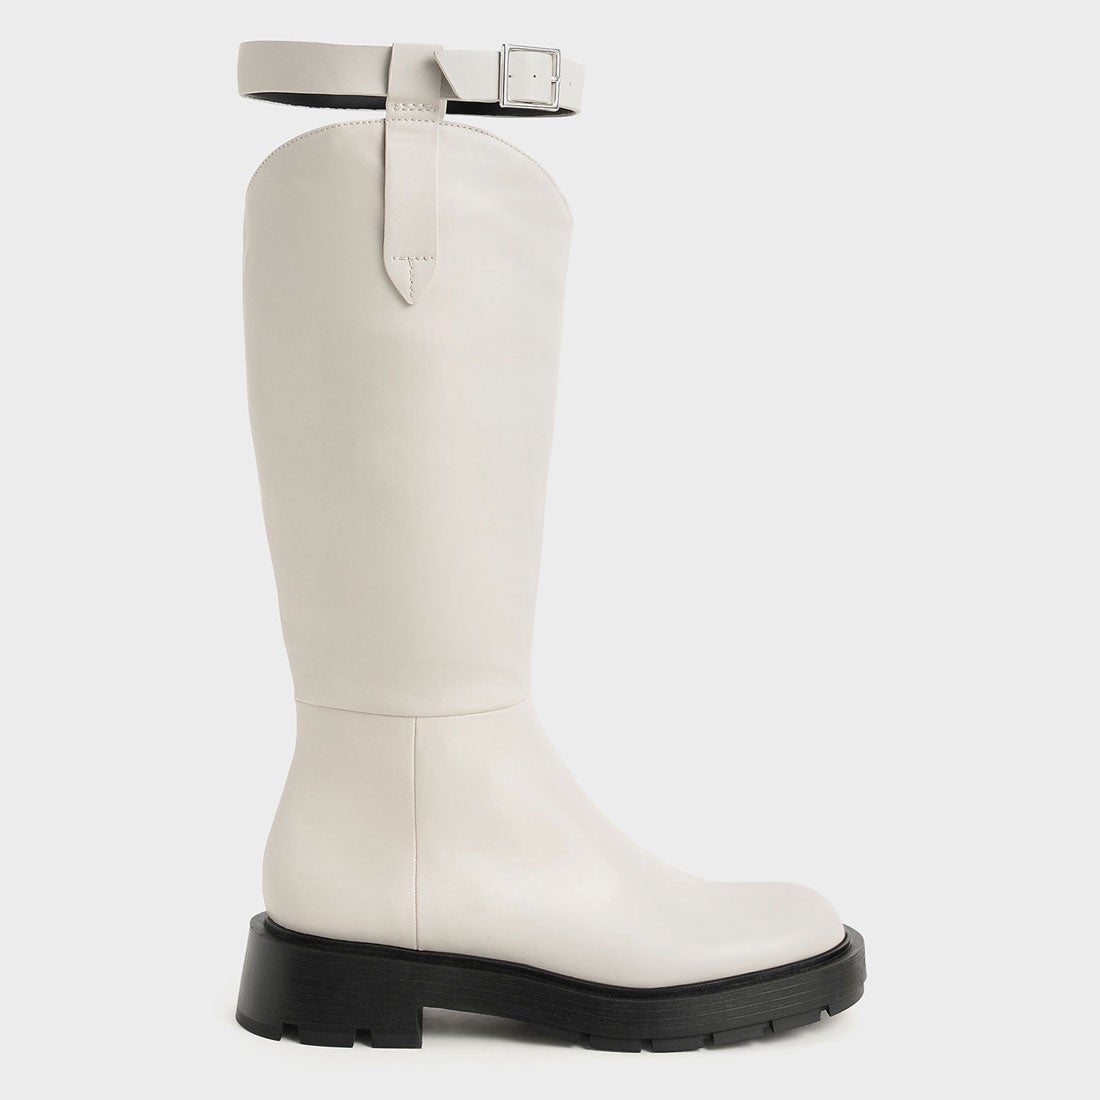 バックルド ニーブーツ Buckled Chalk Knee 全国組立設置無料 Boots 送料無料限定セール中